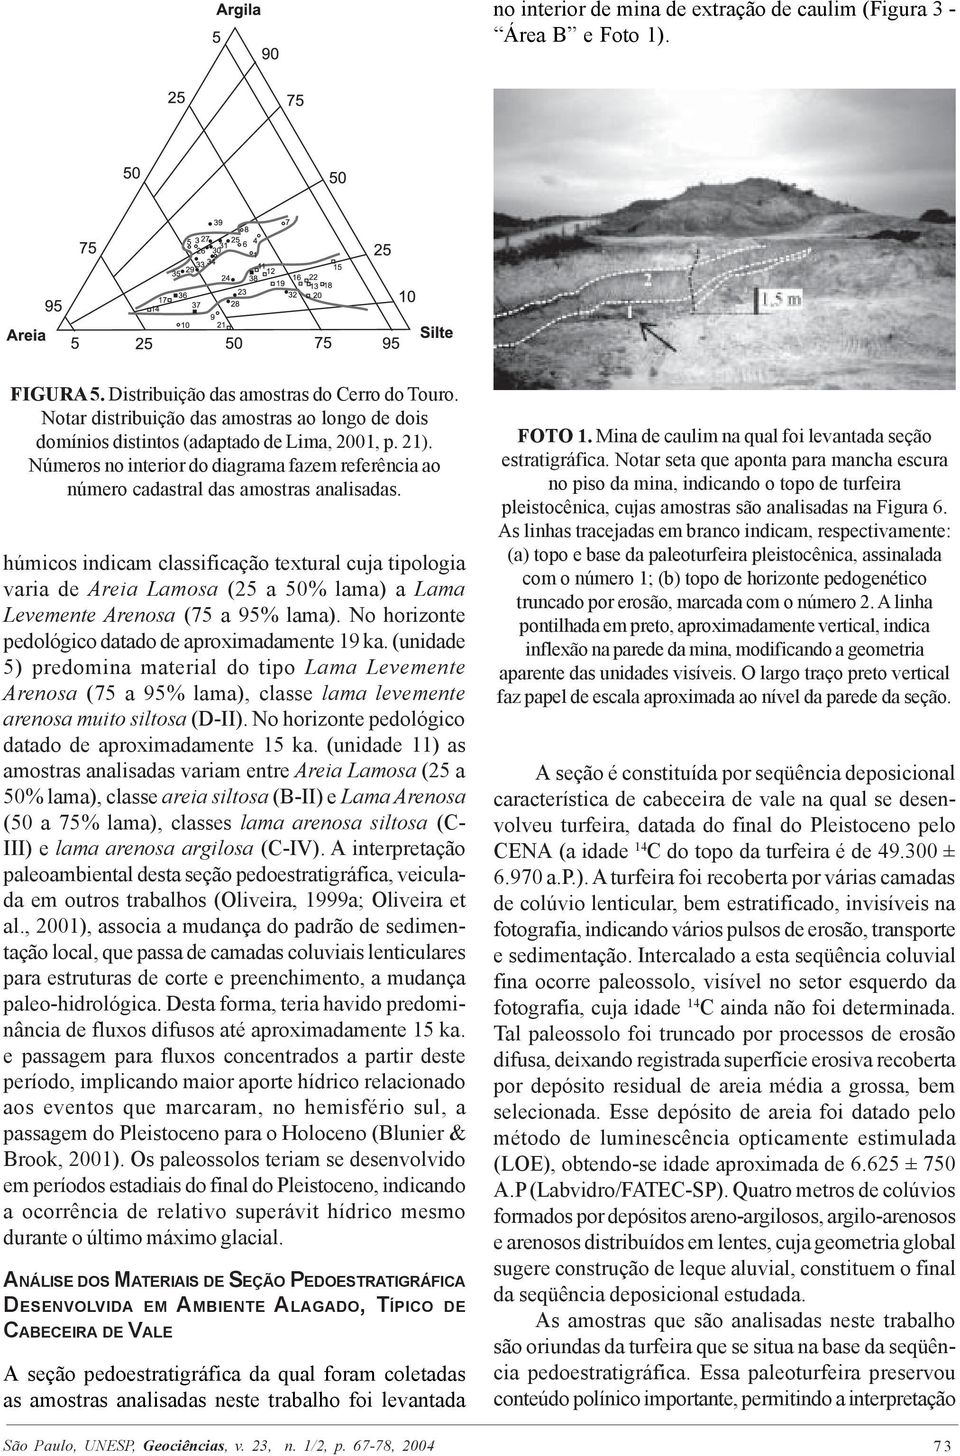 húmicos indicam classificação textural cuja tipologia varia de Areia Lamosa (25 a 50% lama) a Lama Levemente Arenosa (75 a 95% lama). No horizonte pedológico datado de aproximadamente 19 ka.